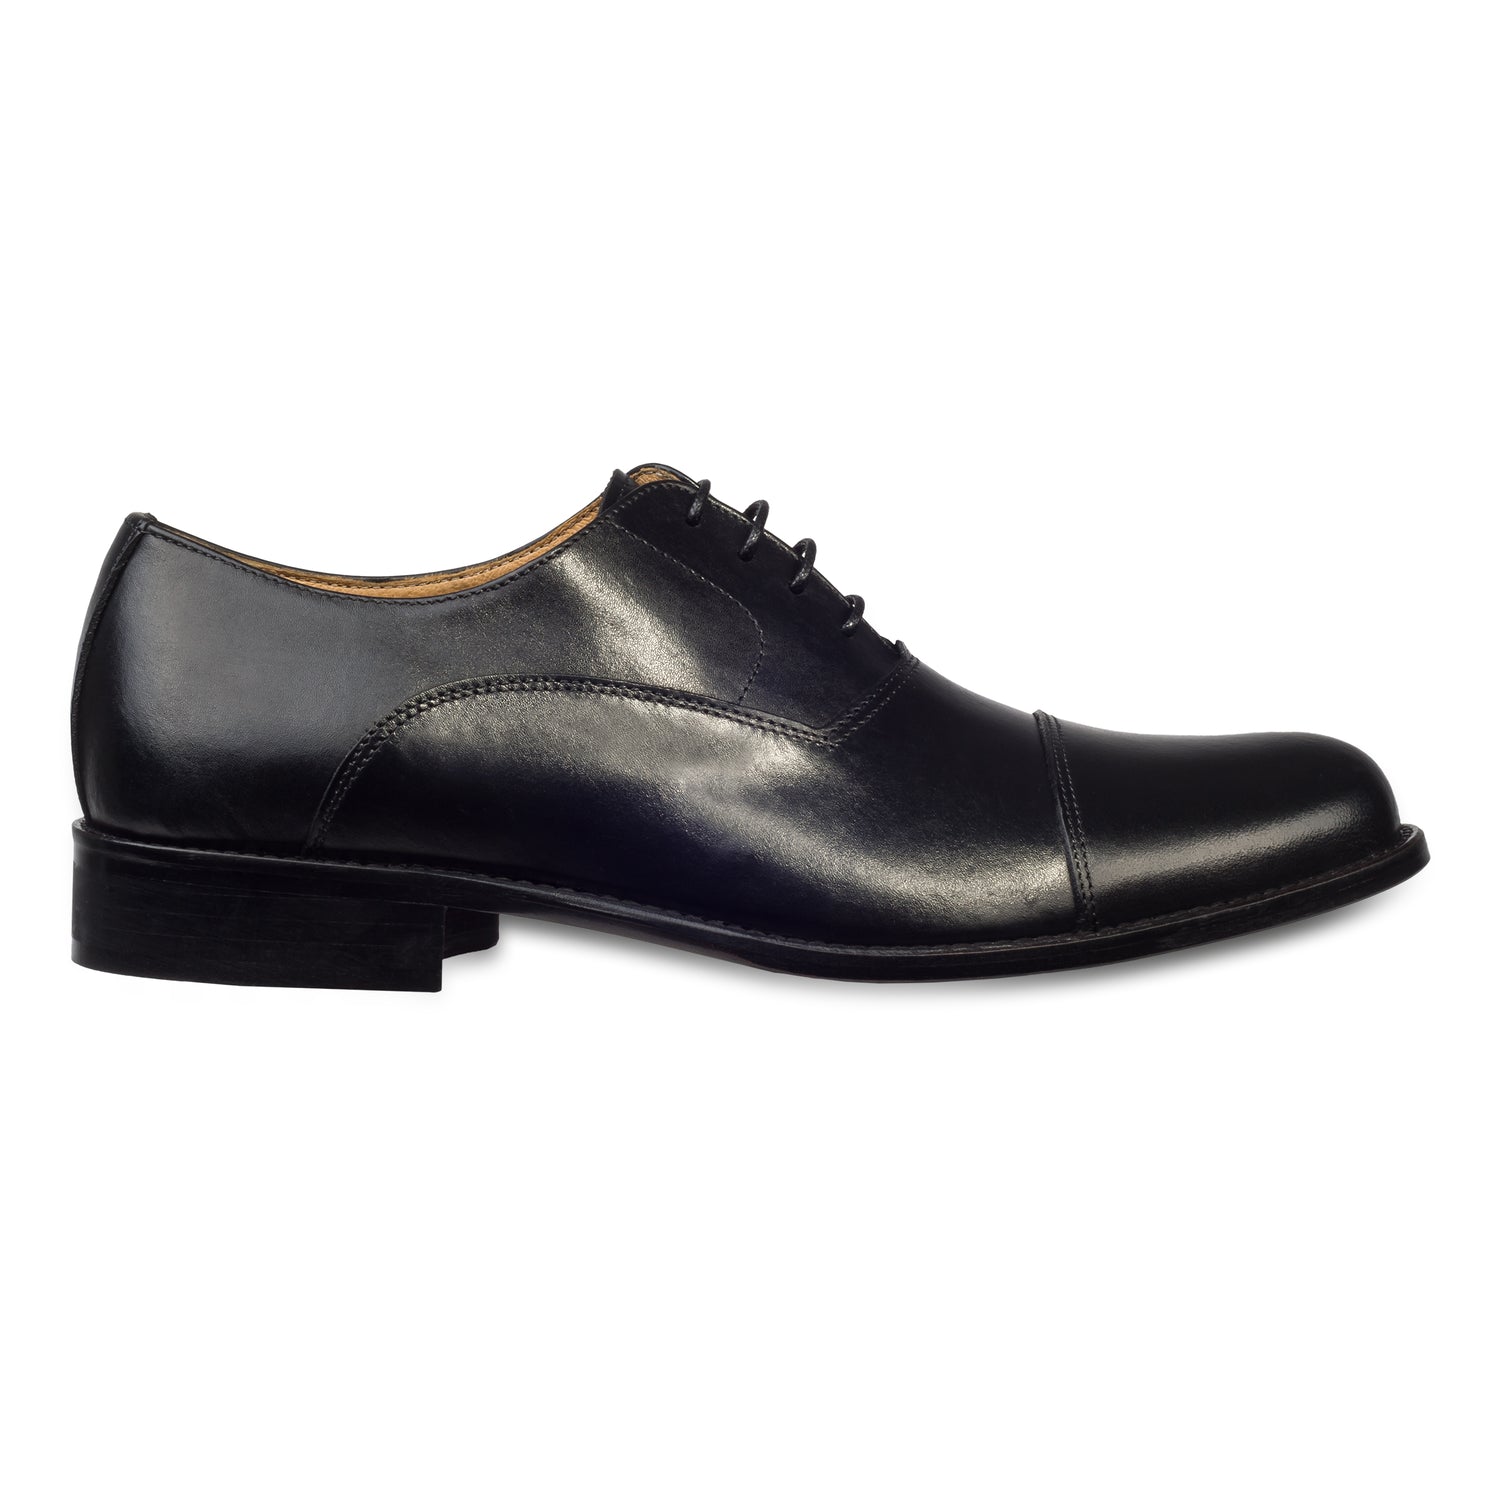 Exton - Italienische Herren Anzugschuhe, Captoe Oxford in schwarz. Aus Kalbsleder handgefertigt. Seitliche Ansicht der Außenseite rechter Schuh.